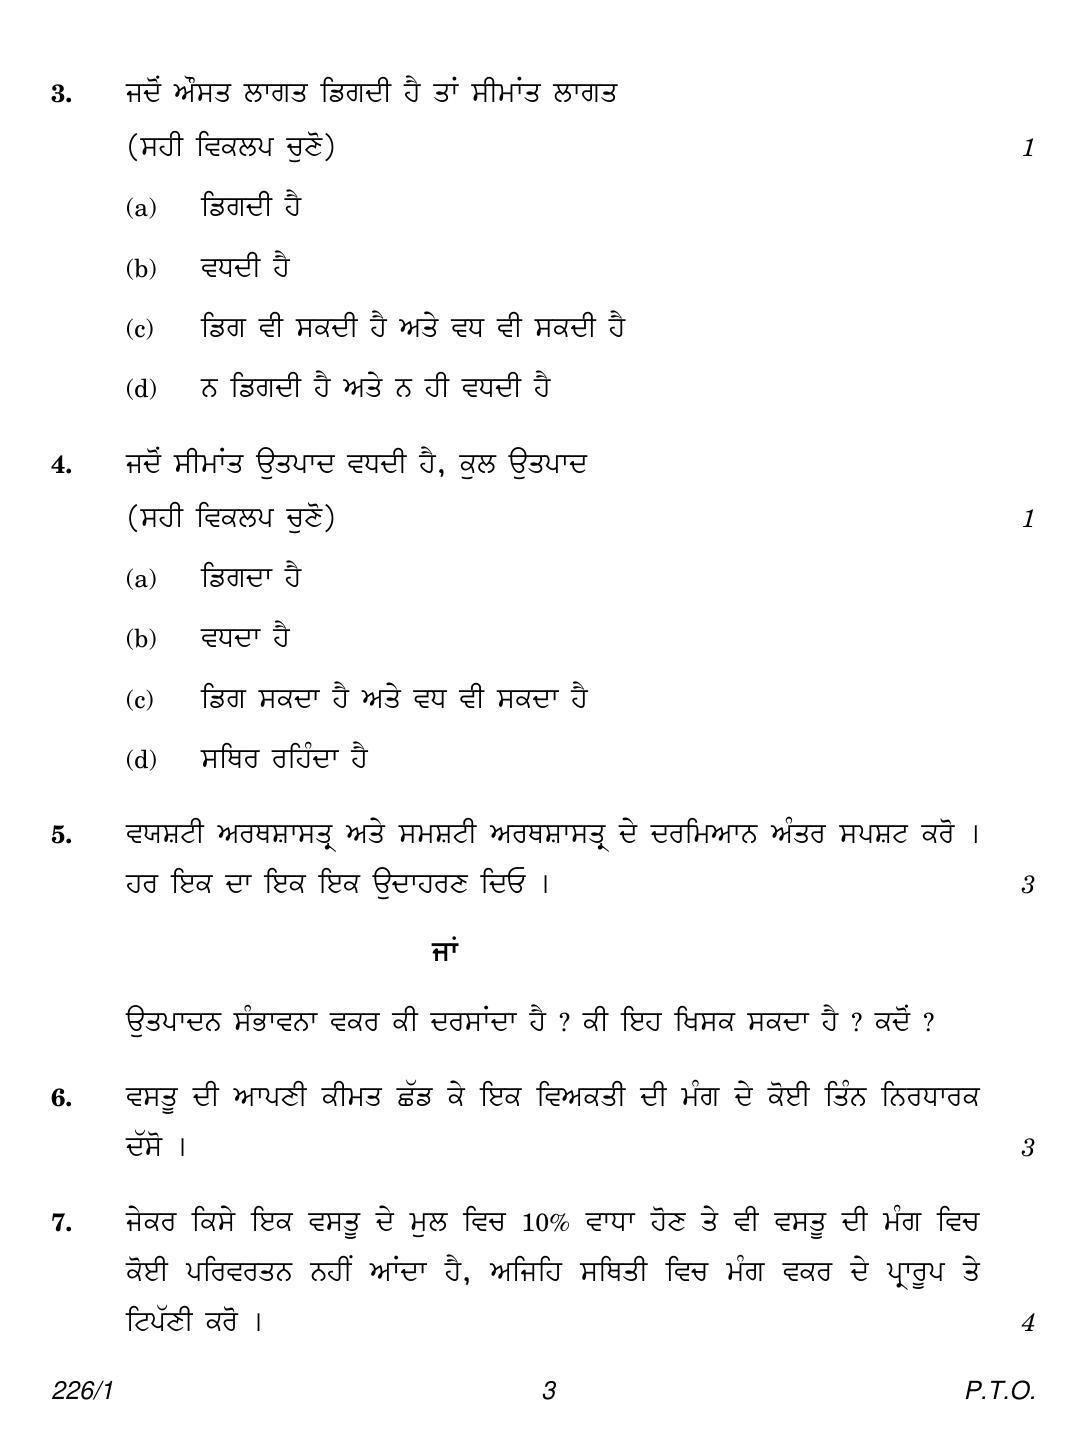 CBSE Class 12 226-1 (Economics Punjabi) 2018 Question Paper - Page 3